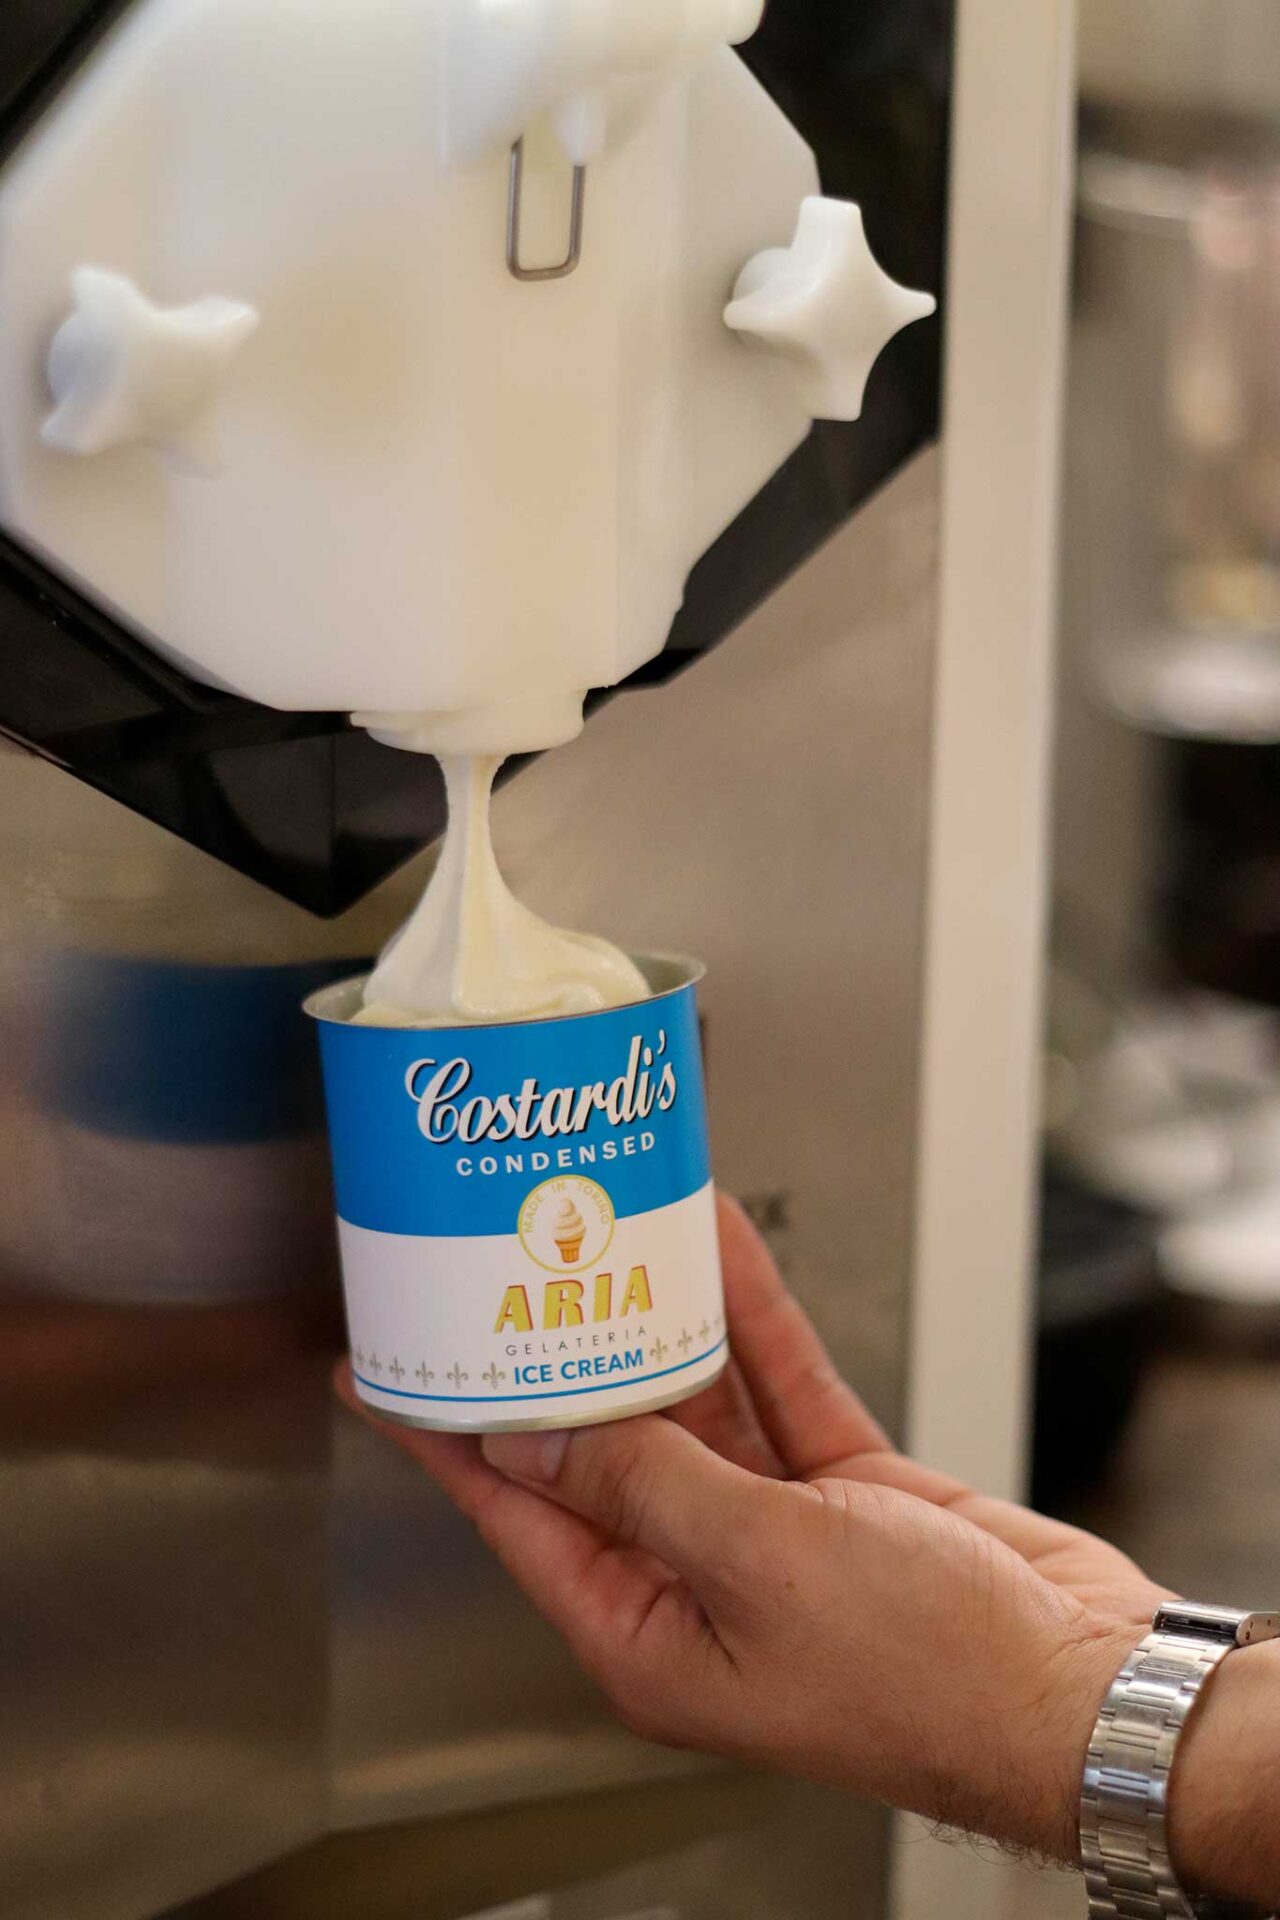 gelato soft in lattina dei Costardi Bros al Caffè San Carlo a Torino: la base